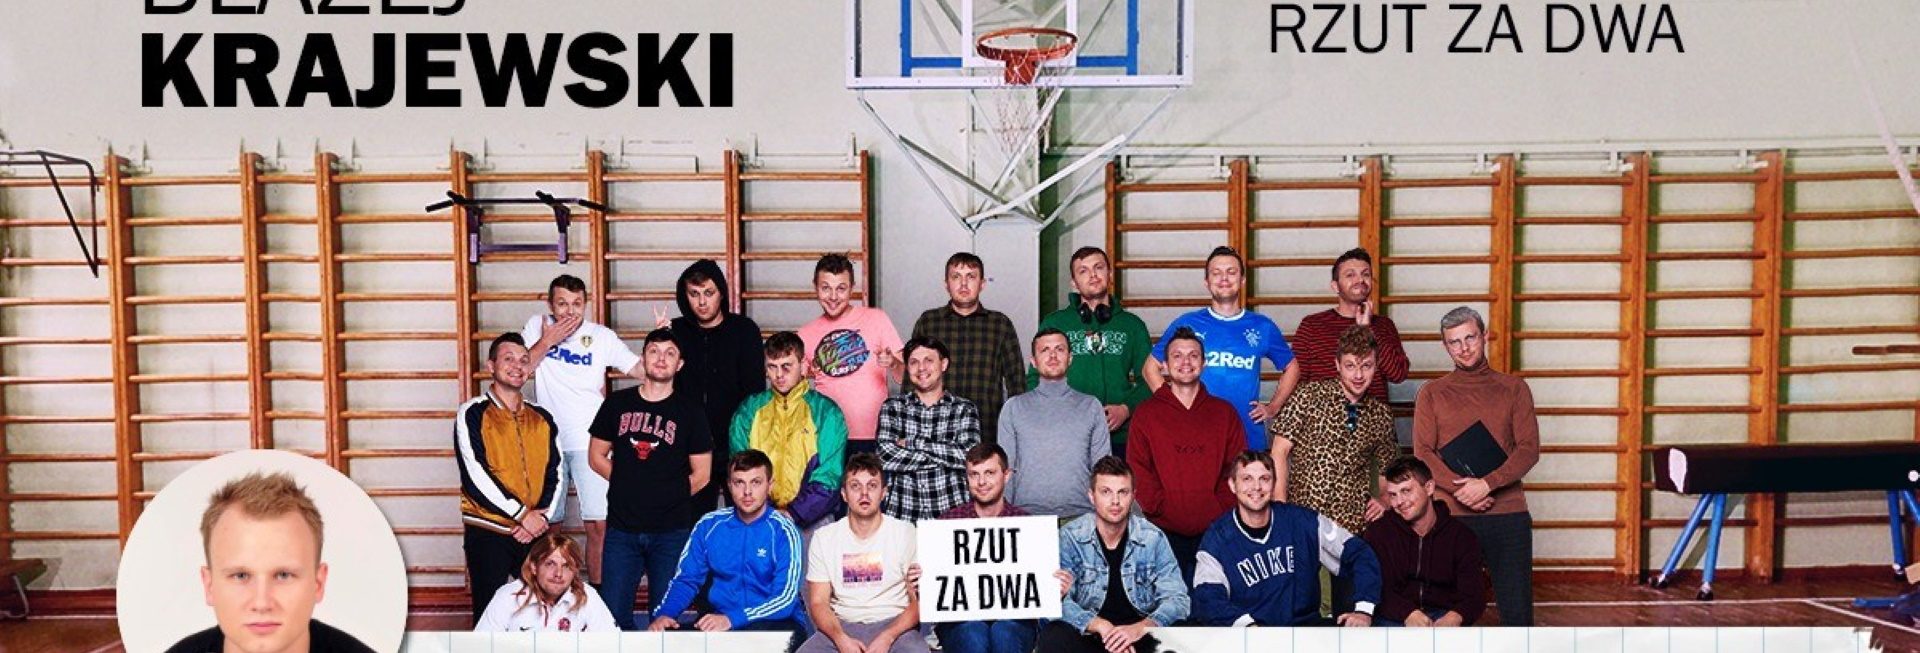 Plakat graficzny zapraszający do Olsztyna na VI Urodziny Stand-upu w Sowie: Błażej Krajewski "Rzut za dwa" - Olsztyn 2021. Na plakacie zdjęcie wszystkich artystów wykonane w sali gimnastycznej. 